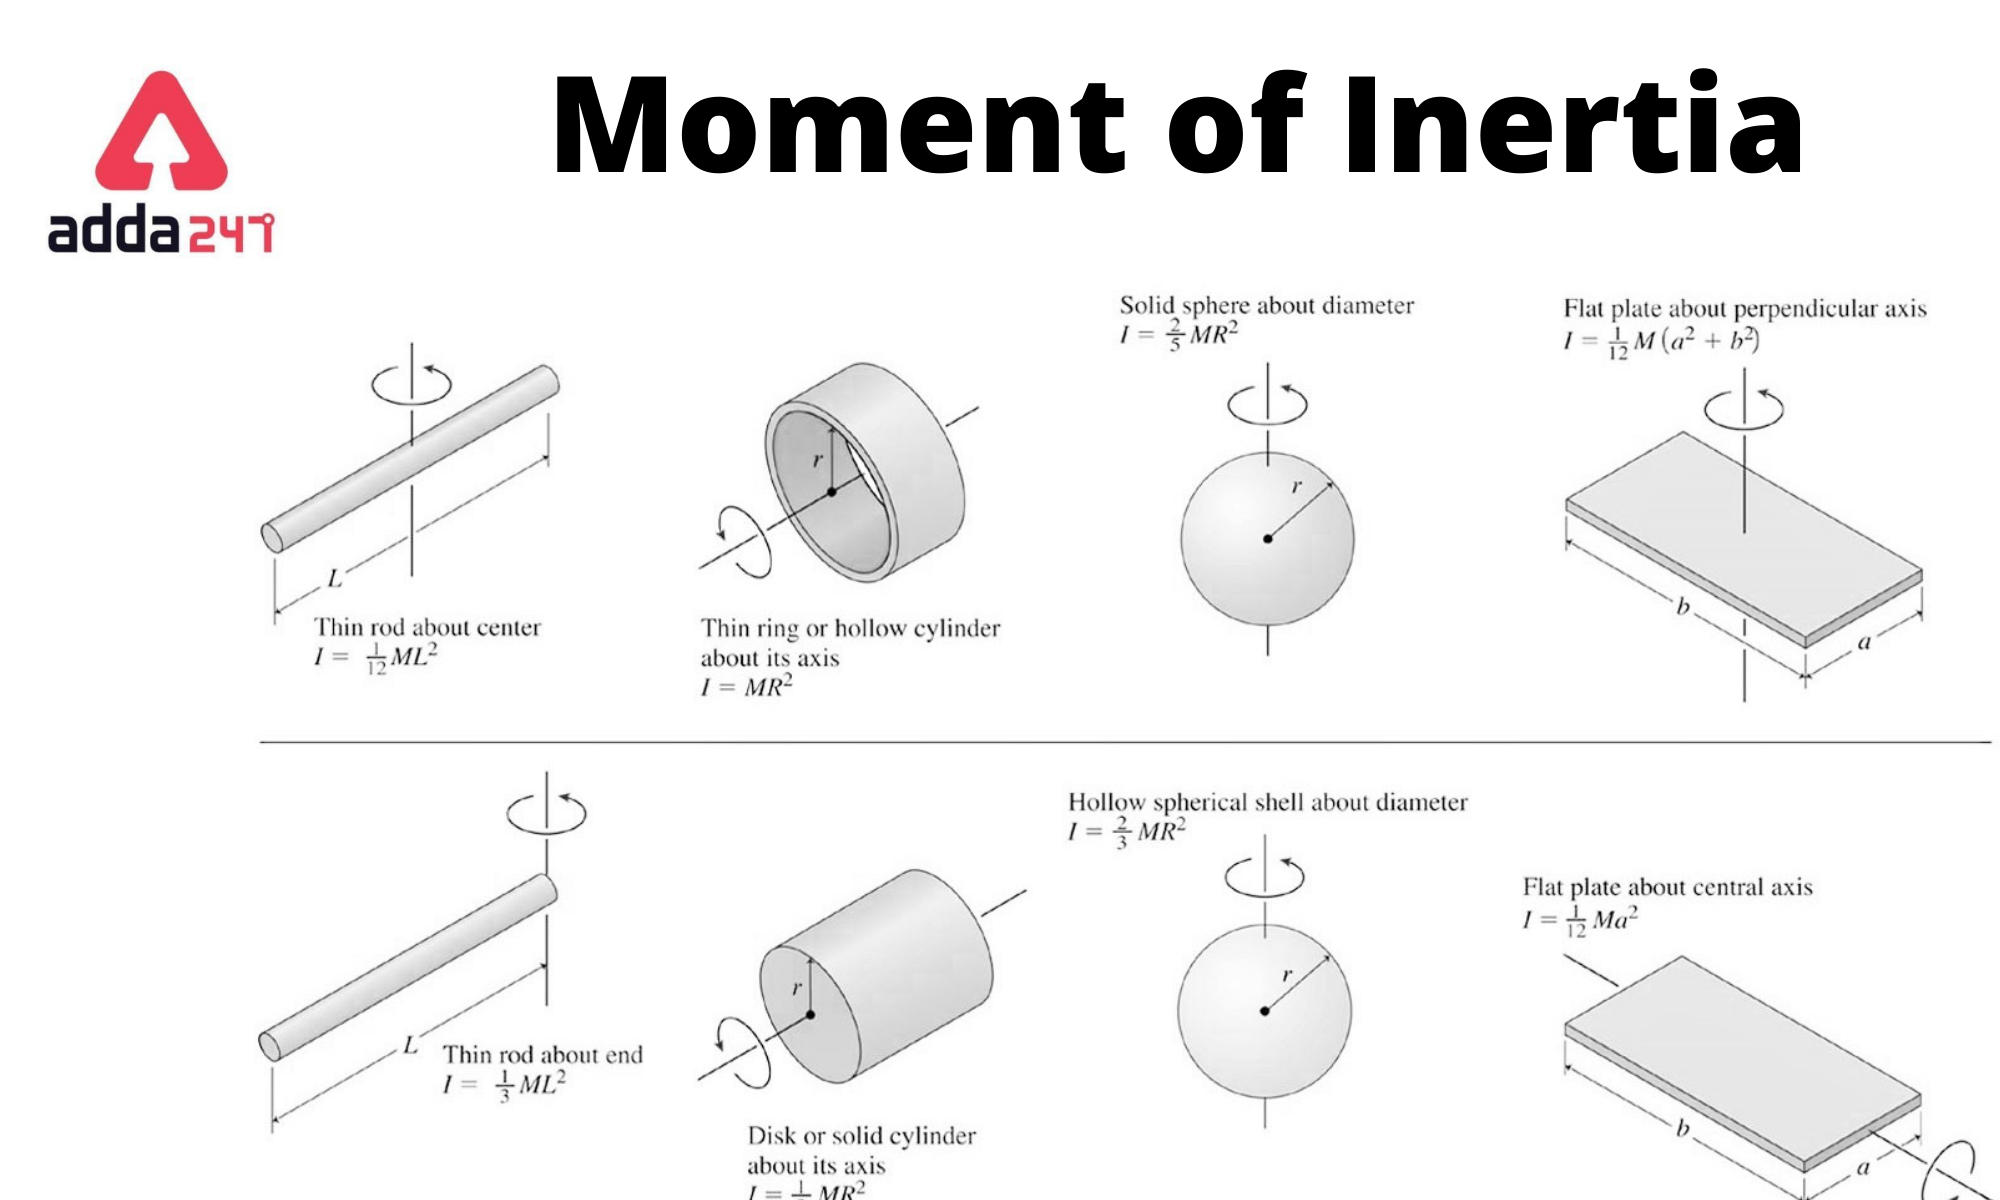 inverted t beam moment of inertia calculator